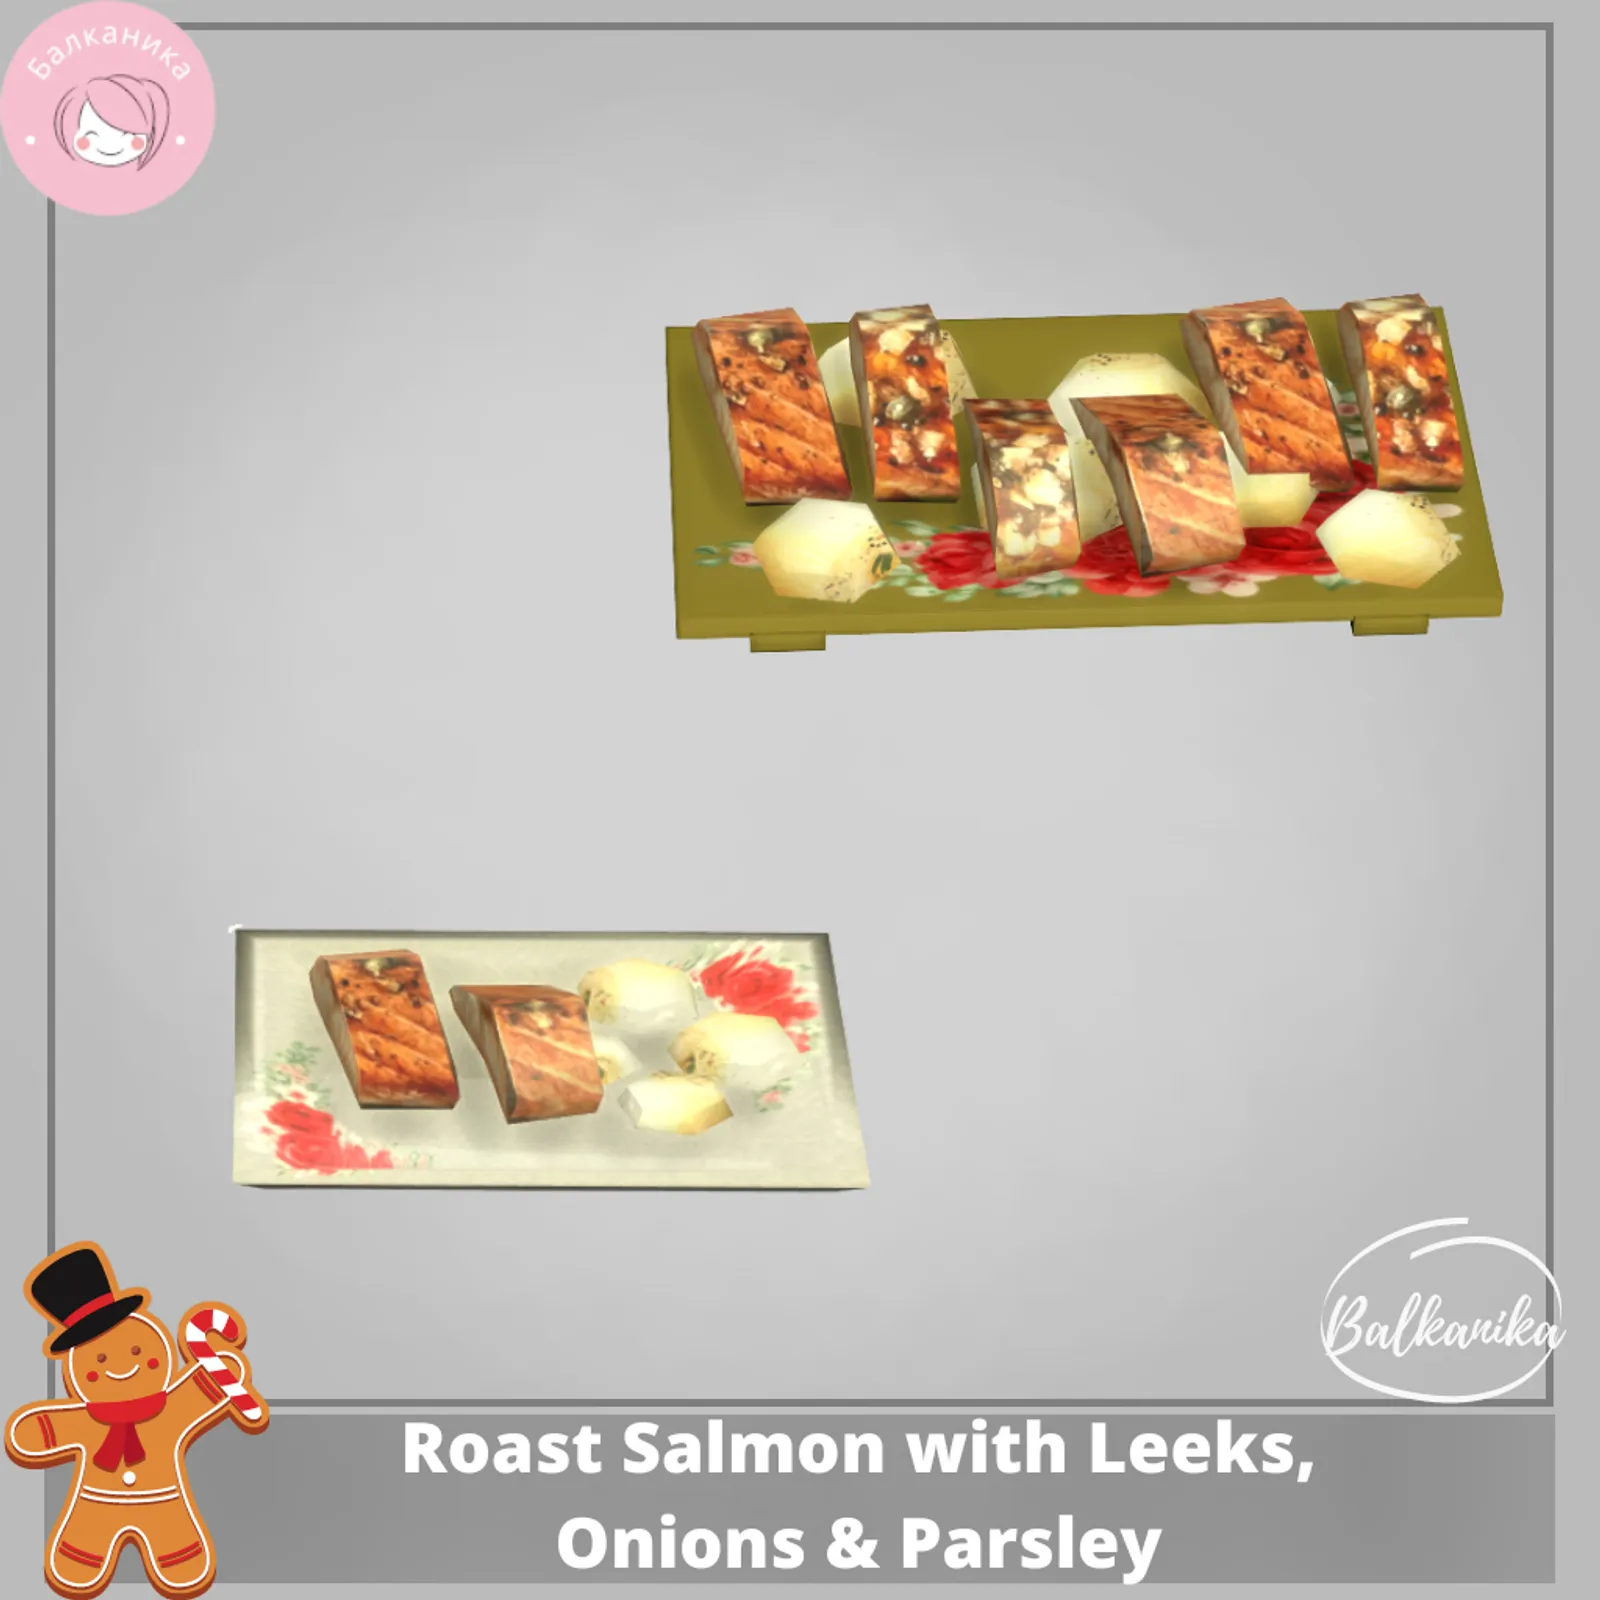 Roast Salmon with Leeks, Onions & Parsley